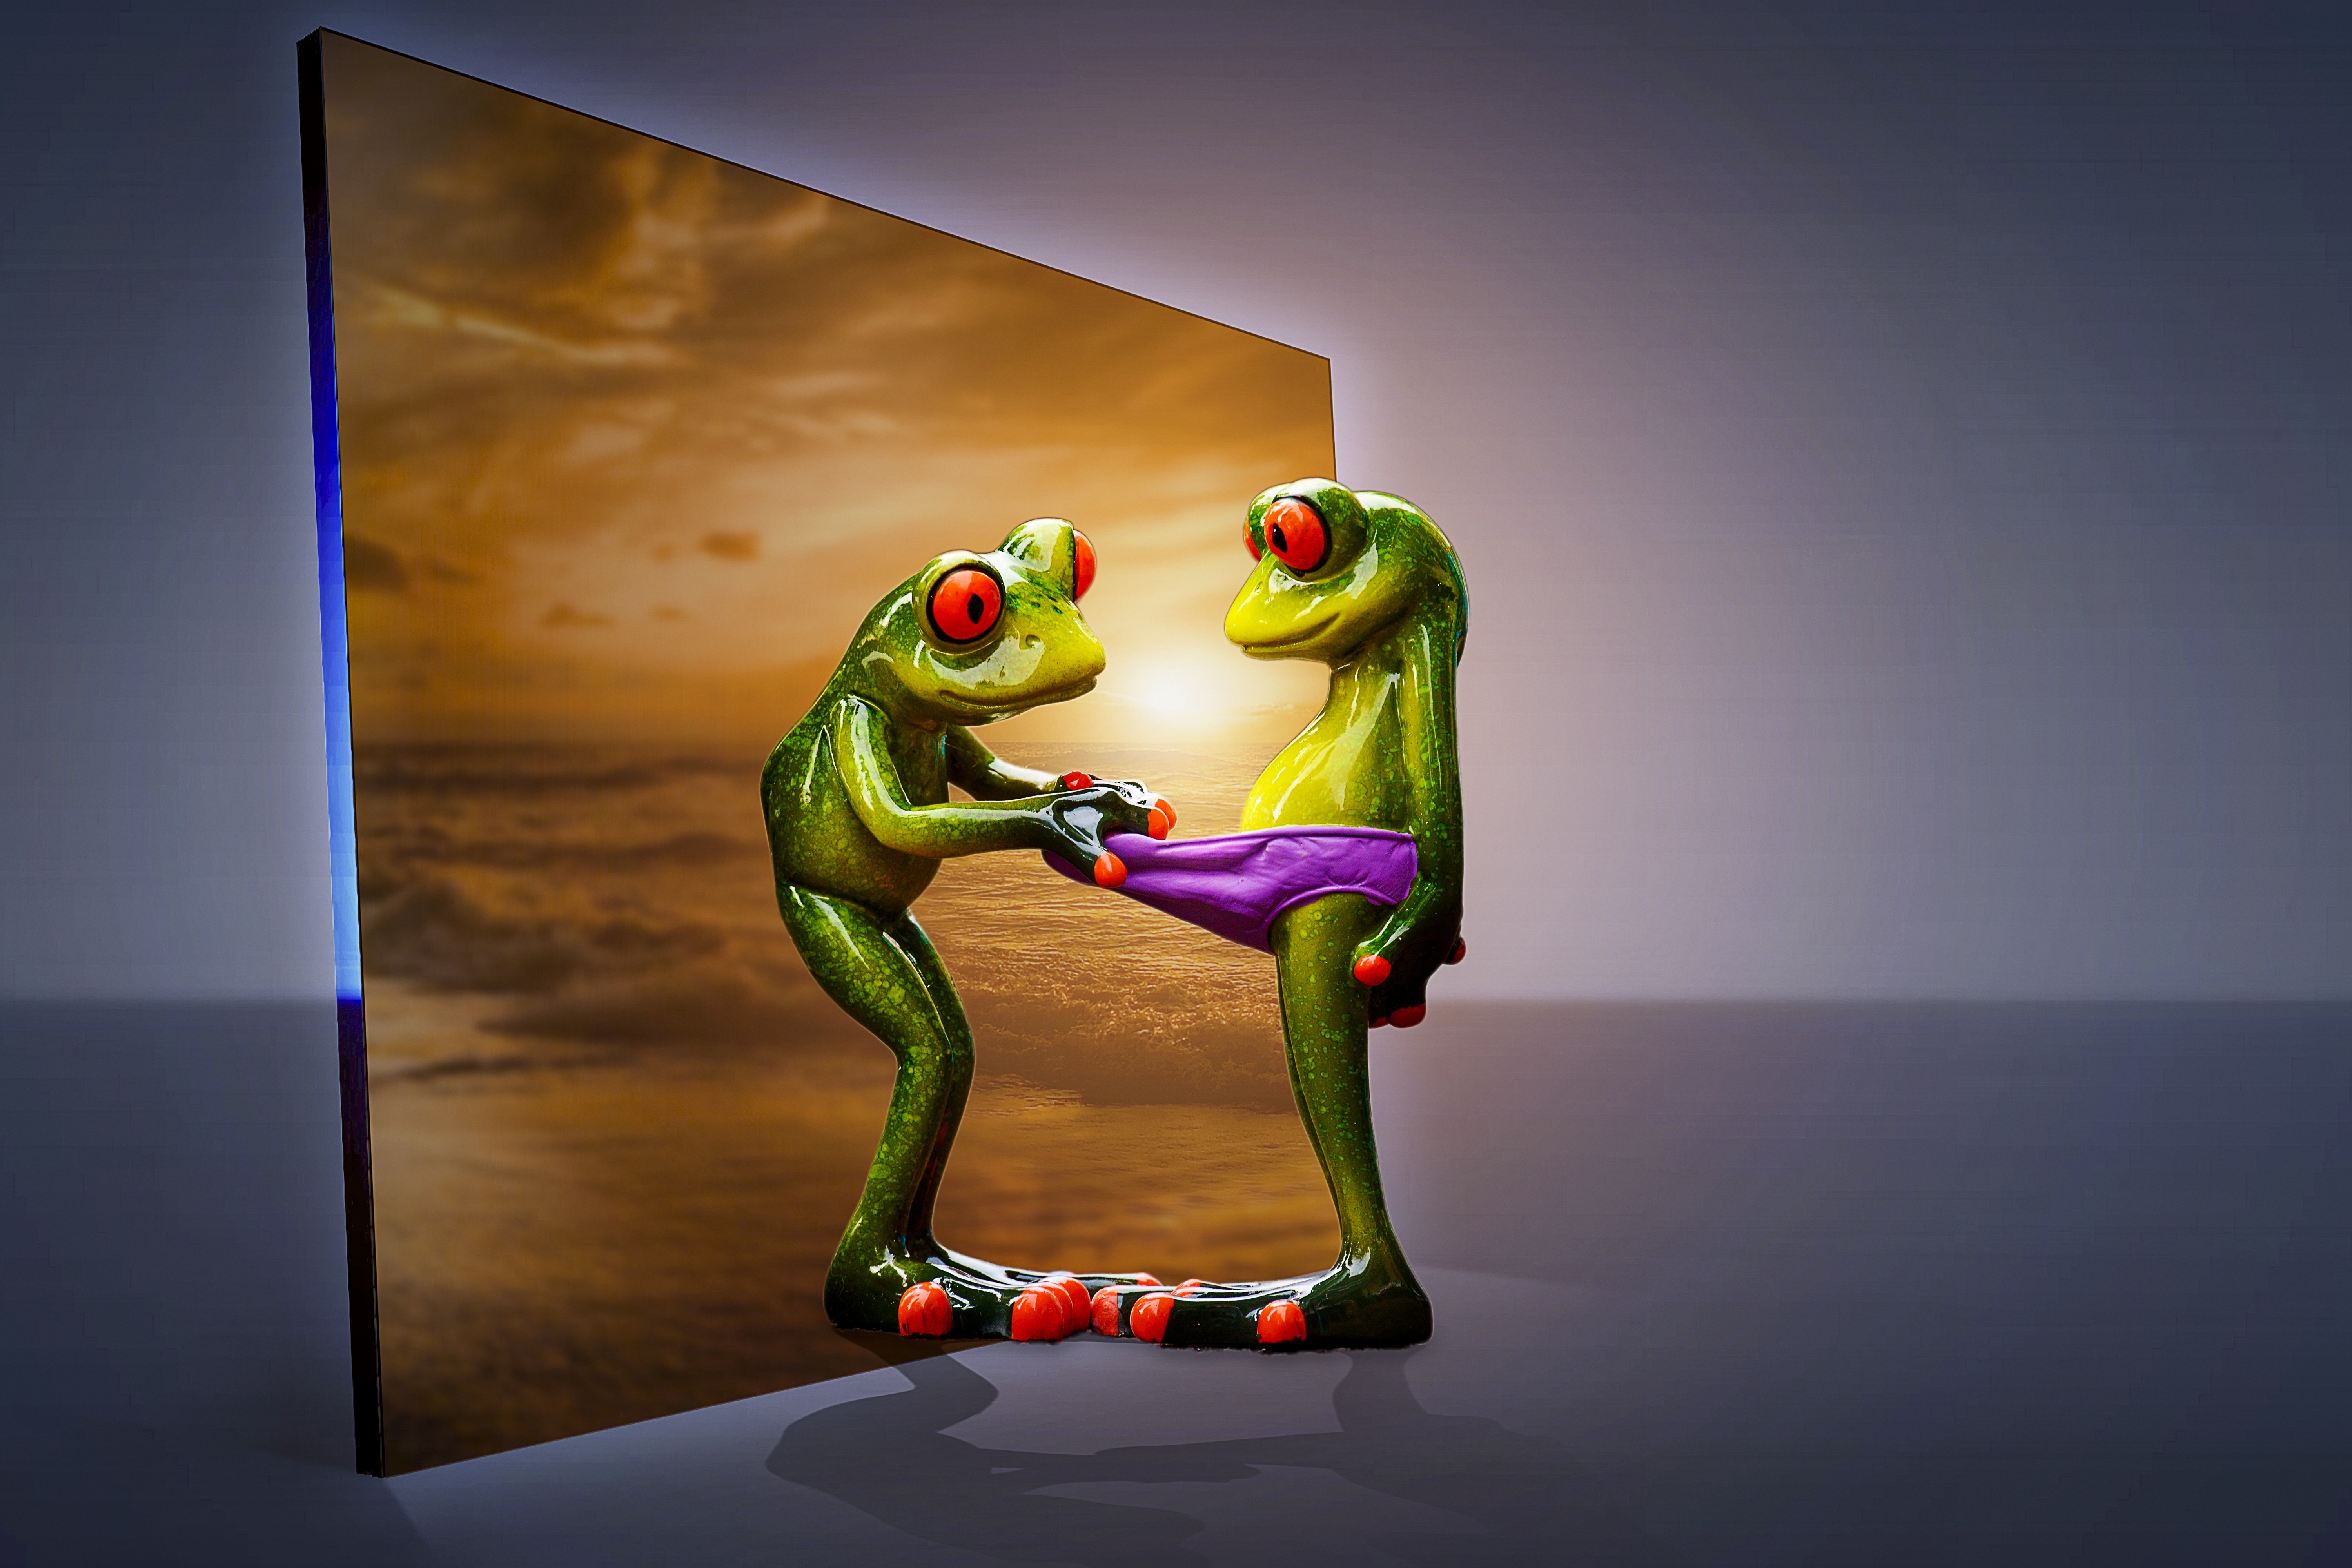 Wallpapers frog figurine figurines on the desktop